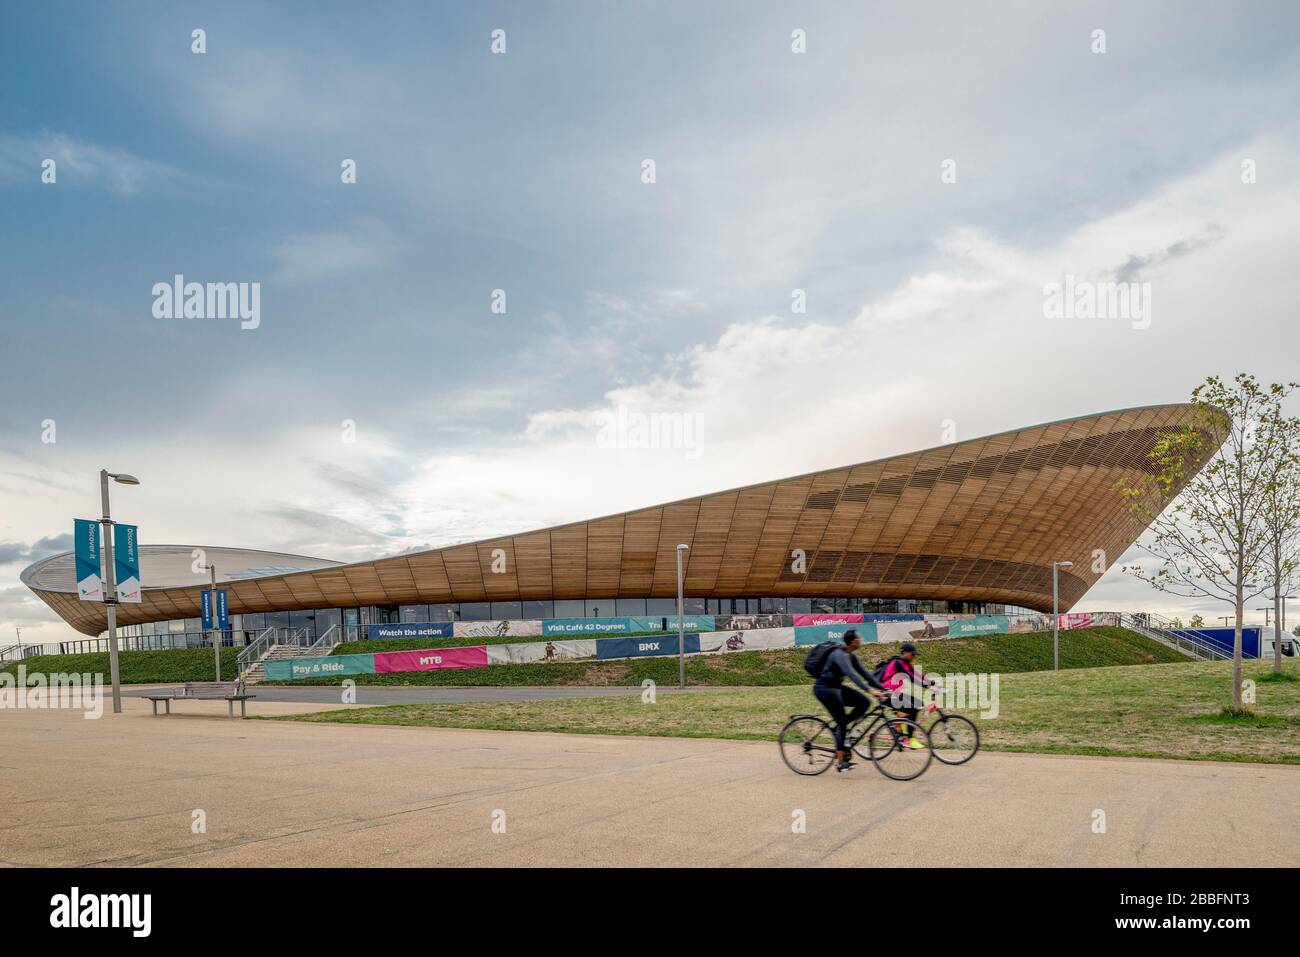 Un par de ciclistas pasan por el impresionante centro de ciclismo y velódromo utilizados durante las olimpiadas de verano de 2012 en Londres Foto de stock